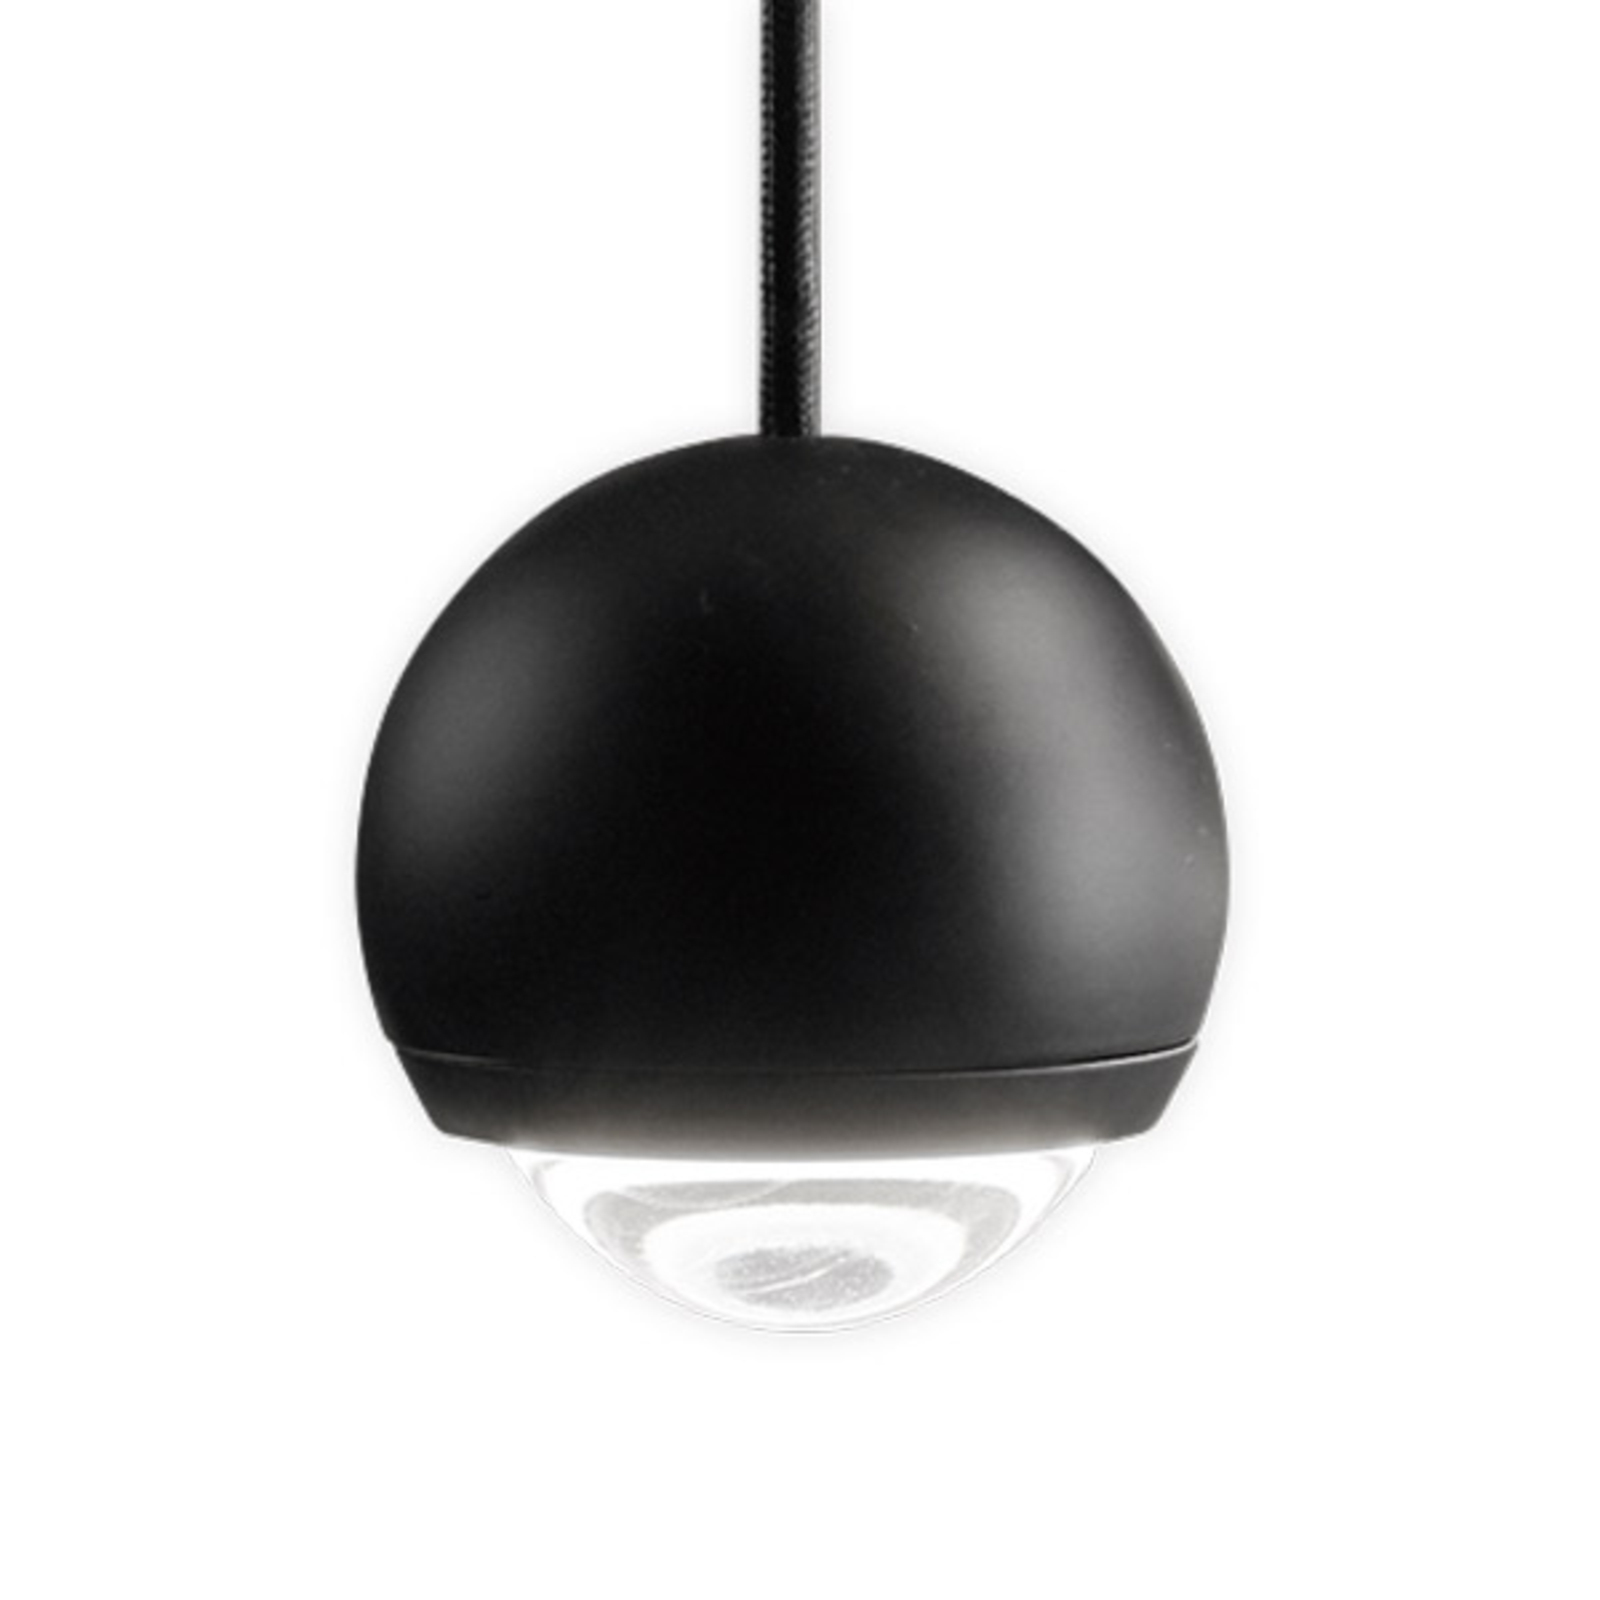 Egger Cleo LED hanglamp, zwart